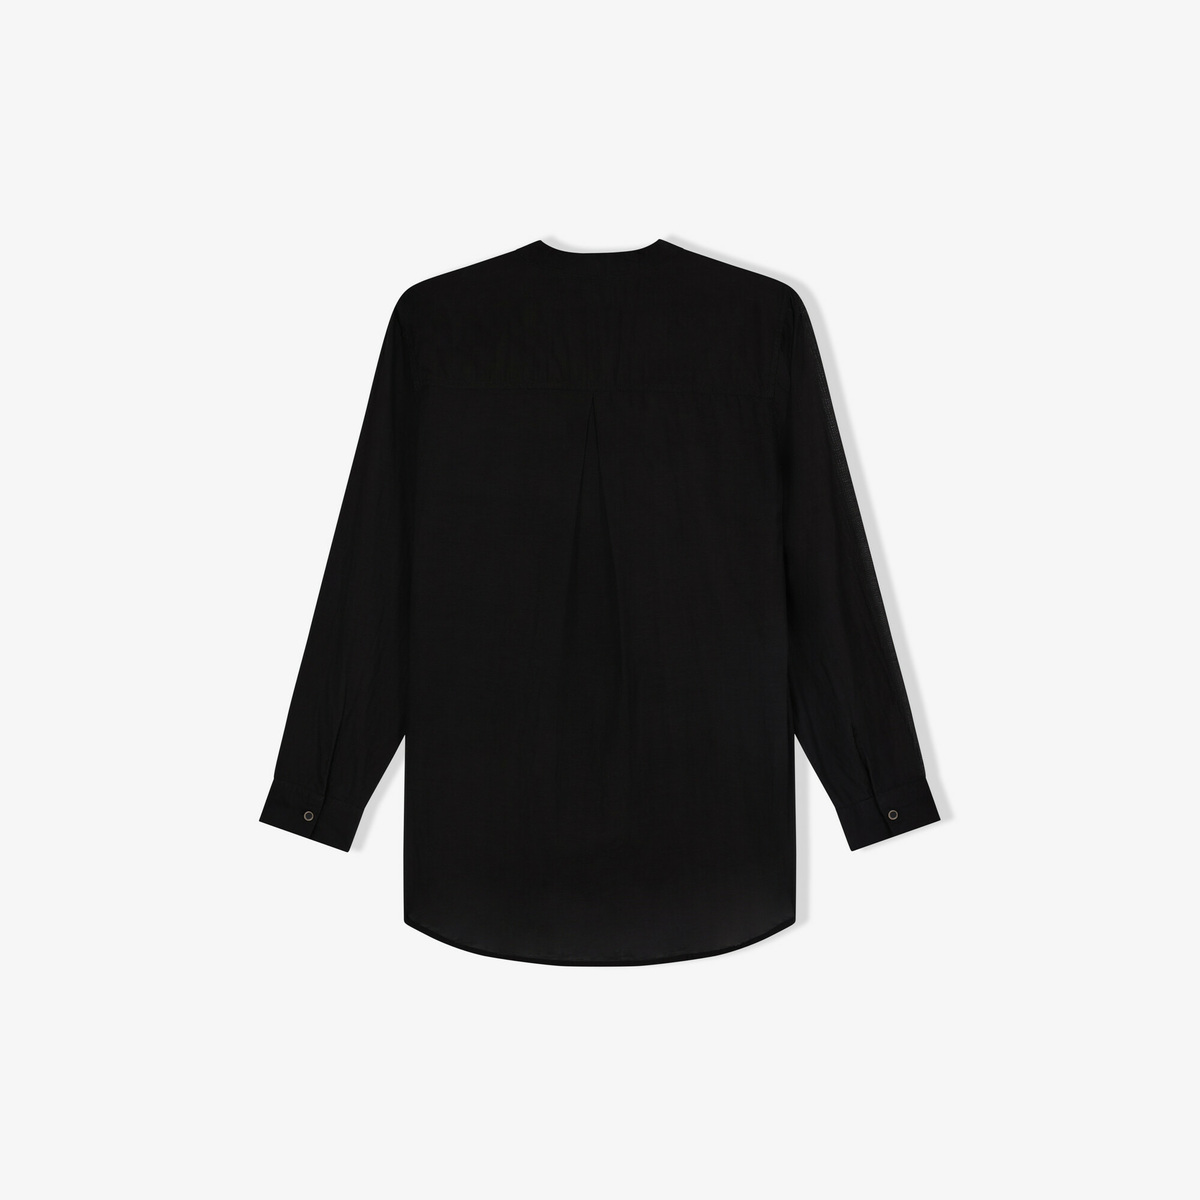 Ellea bib blouse, Black - Lightweight cotton voile - image 2